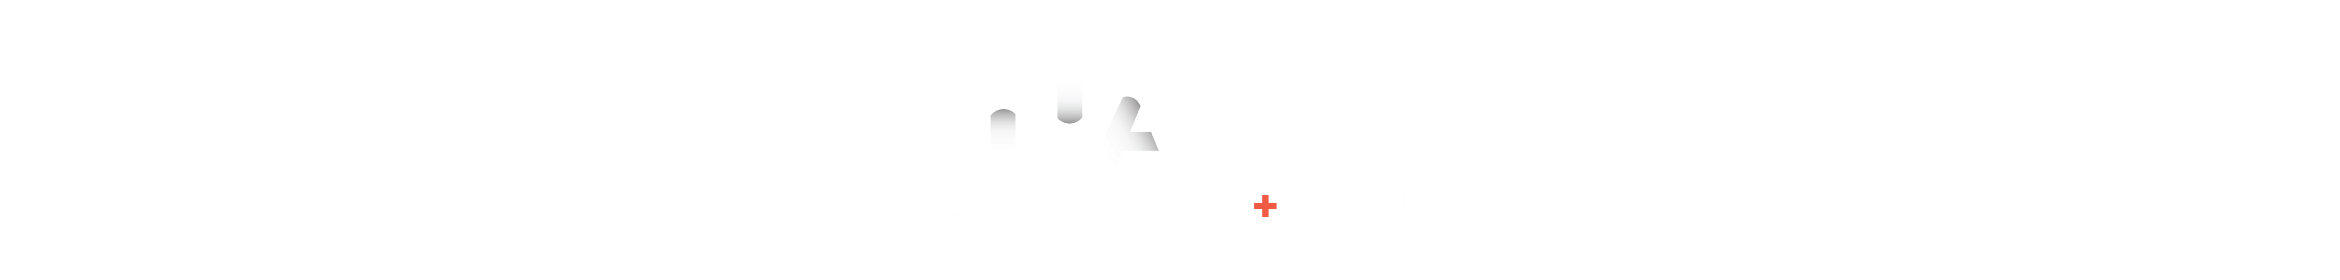 2024 Annual Congress  Main banner